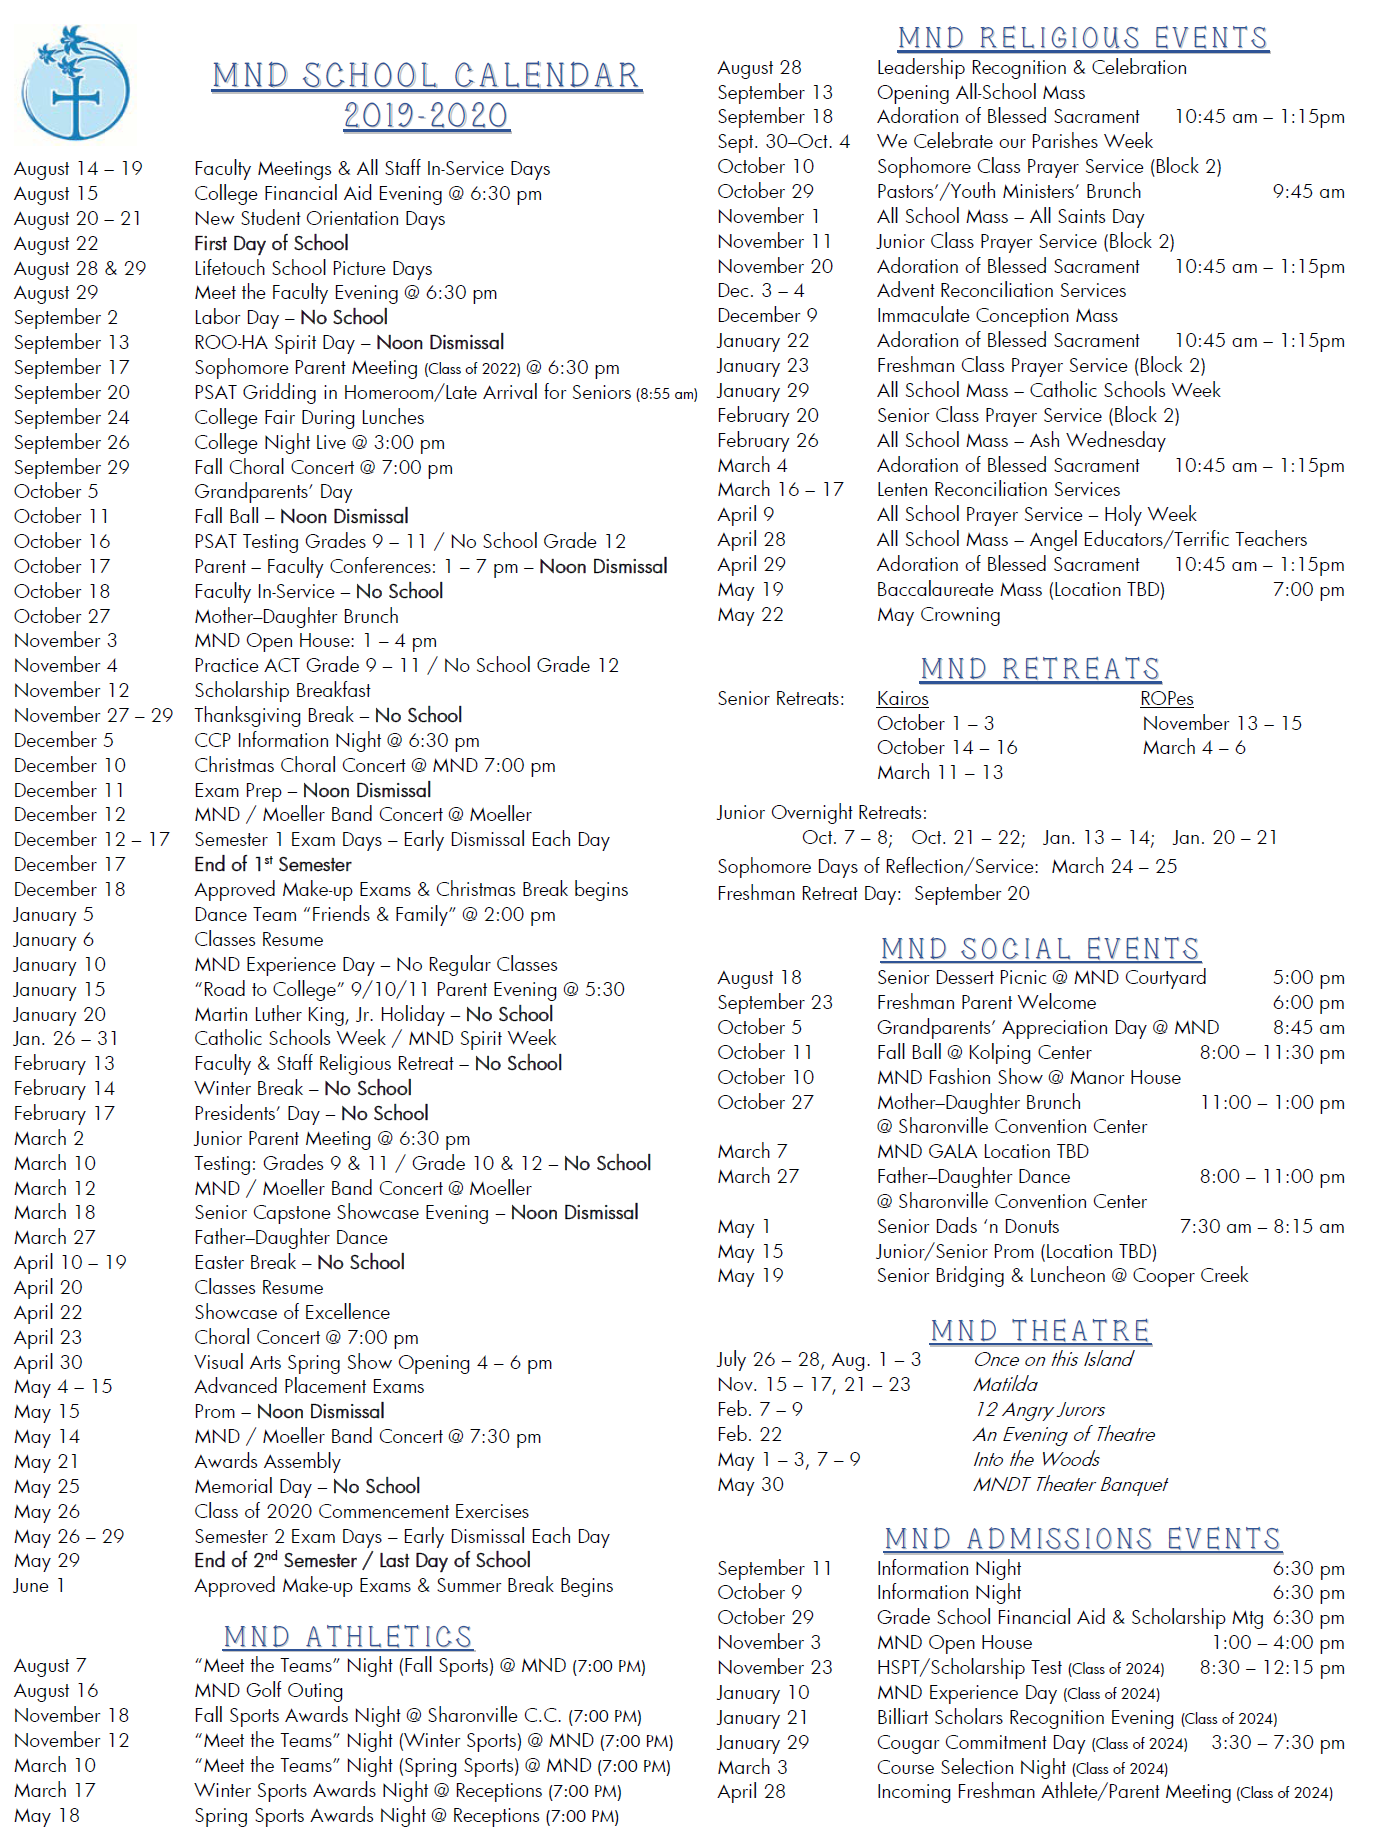 Notre Dame 2022 Academic Calendar School Calendar With Activities - Mount Notre Dame High School